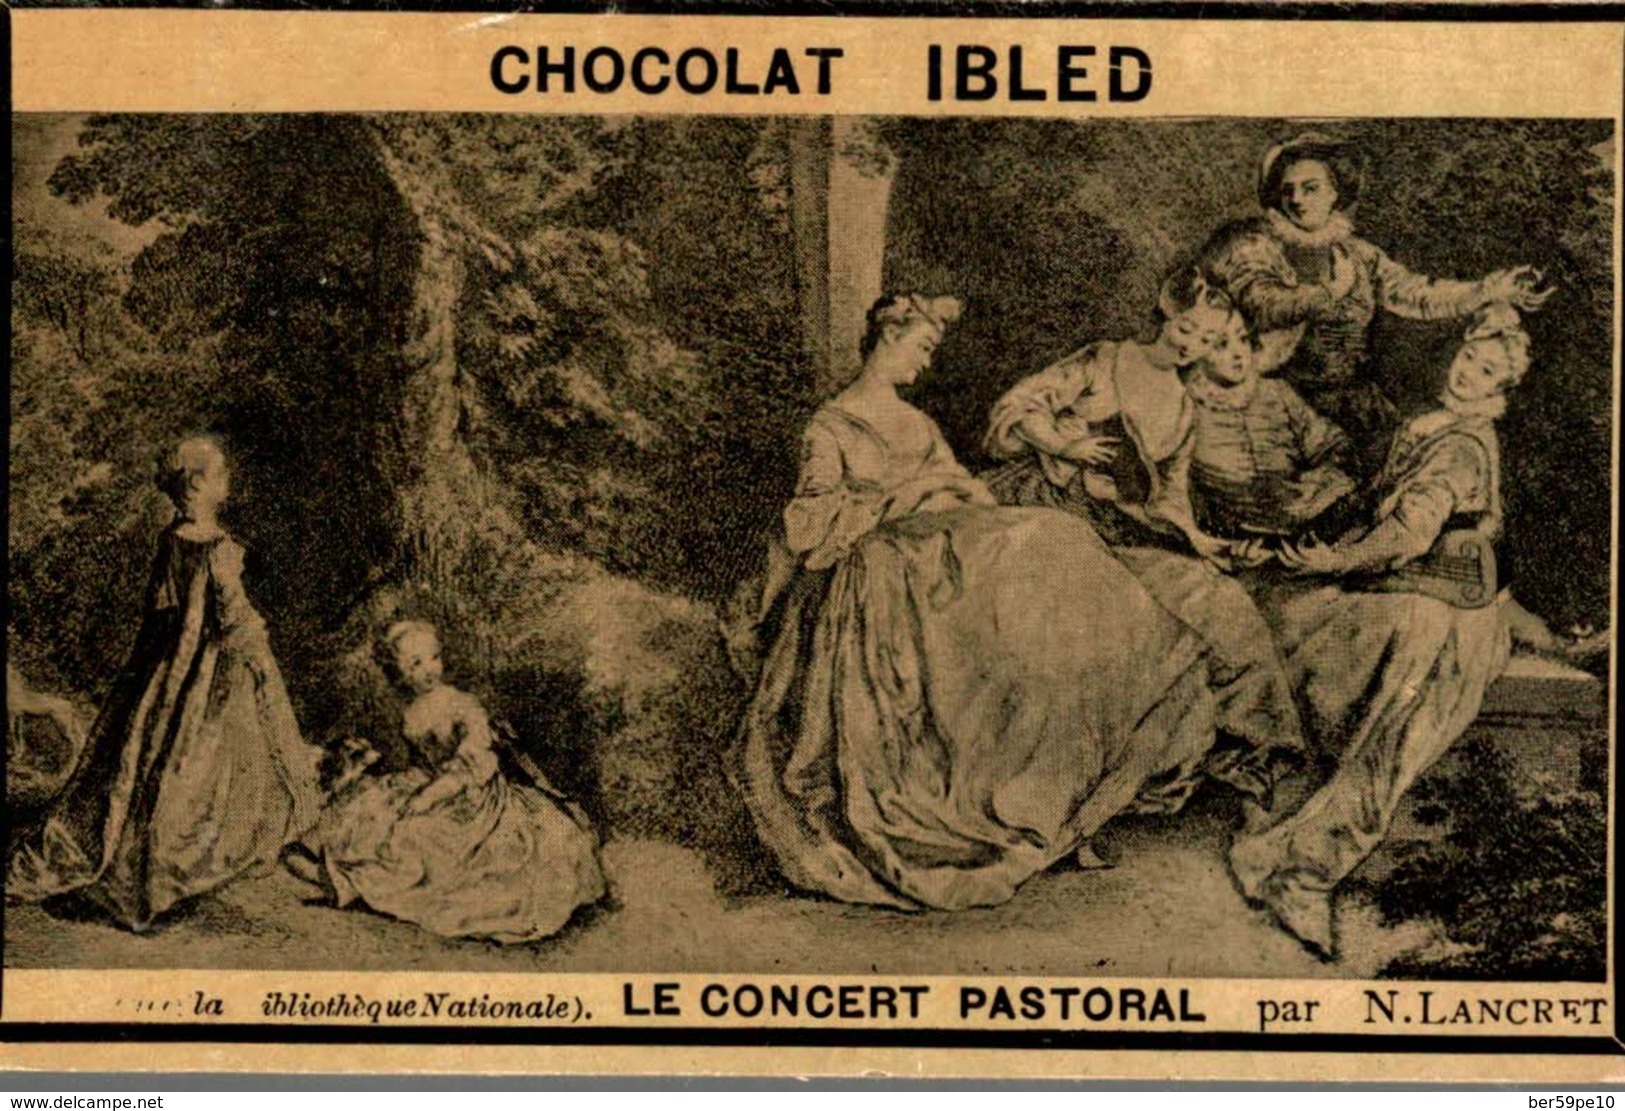 CHROMO  CHOCOLAT IBLED PARIS-MONDICOURT  LE CONCERT PASTORAL  MUSEE DE LA BIBLIOTHEQUE NATIONALE  PAR N. LANCRET - Ibled